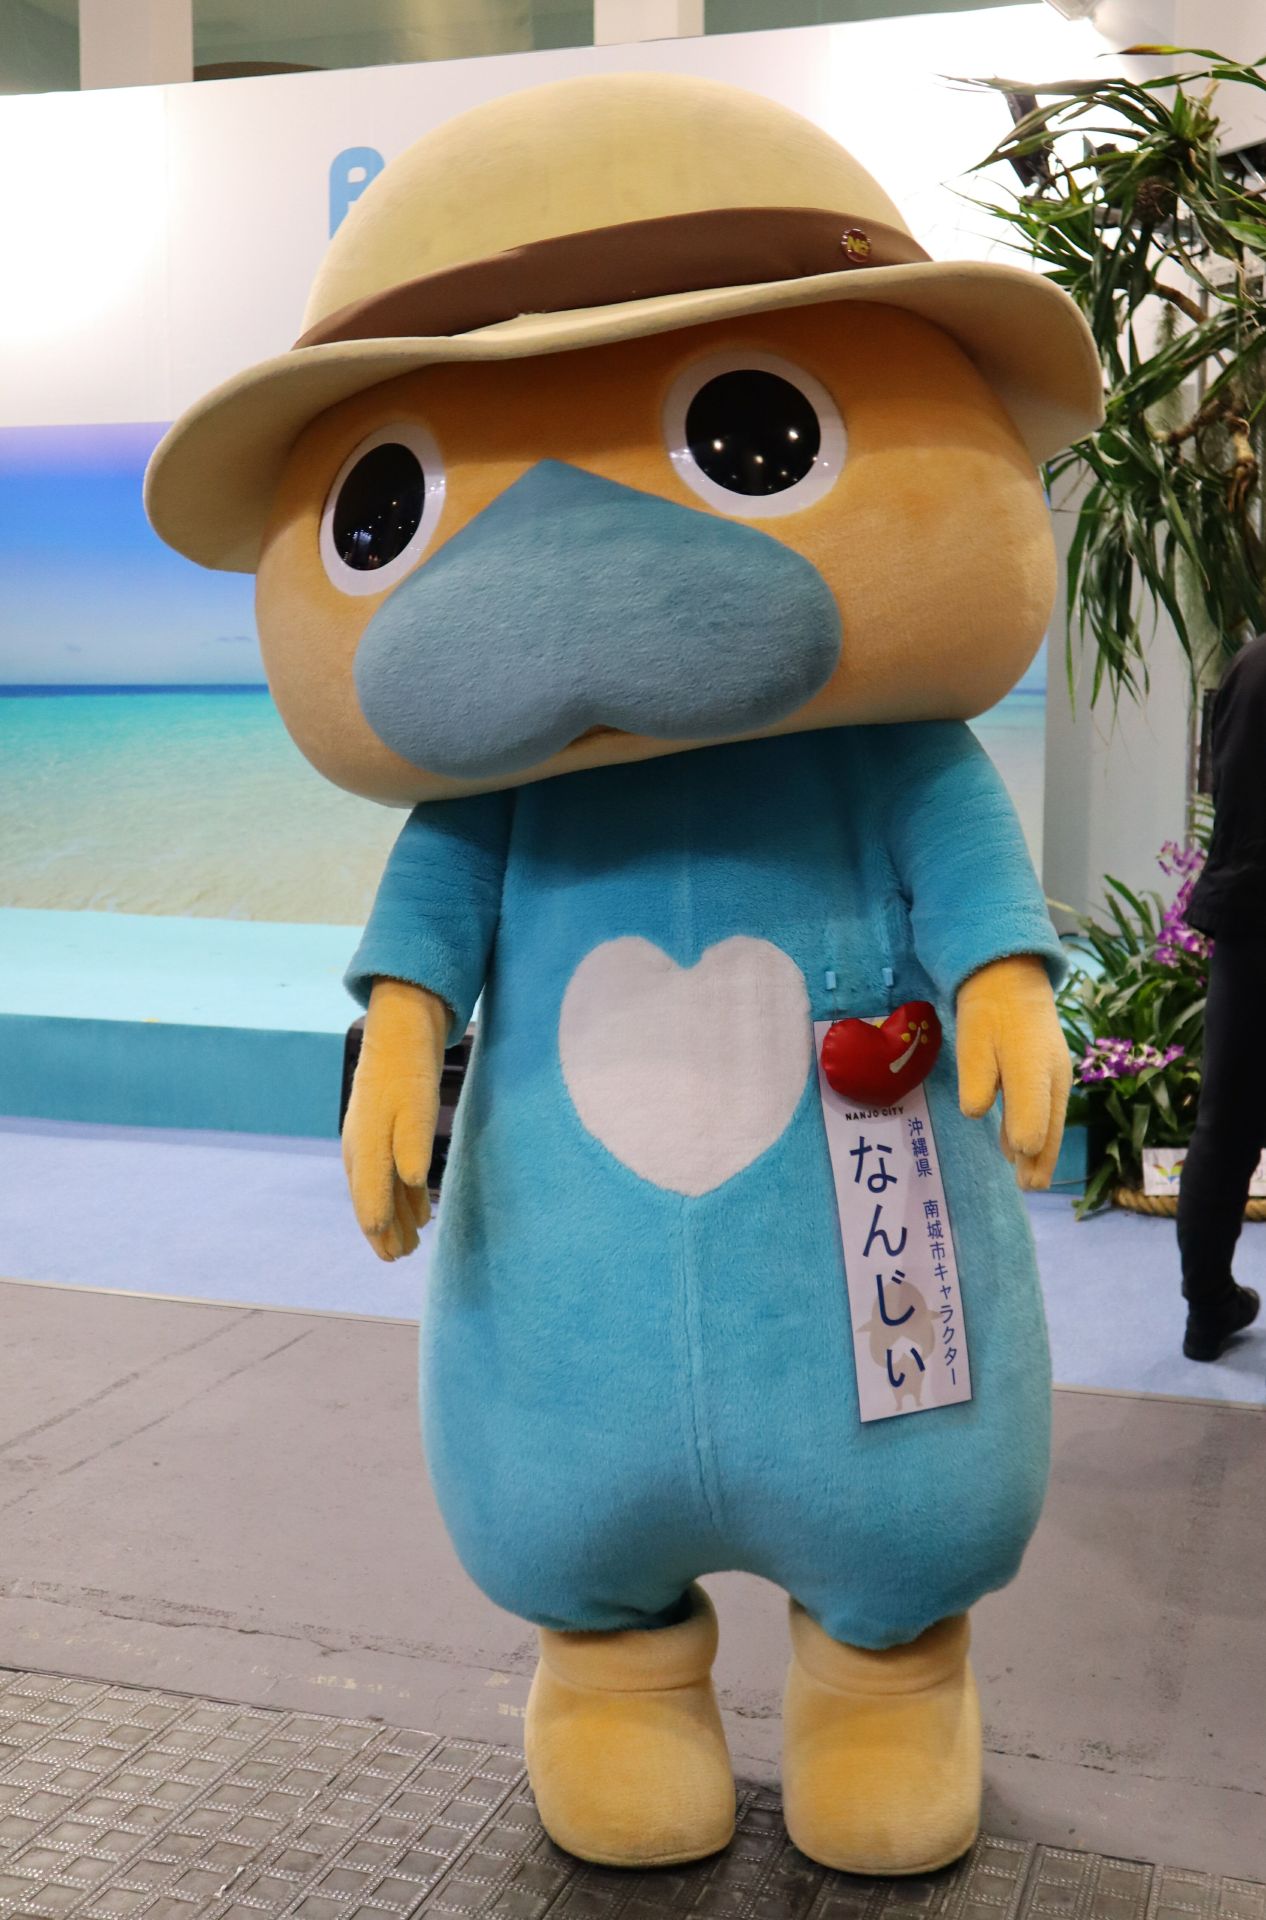 Japanese Mascot Photograph Yuruchara Jp ゆるキャラ なんじぃ 沖縄県南城市 沖縄本島の南部に位置する南城市のマスコットキャラ